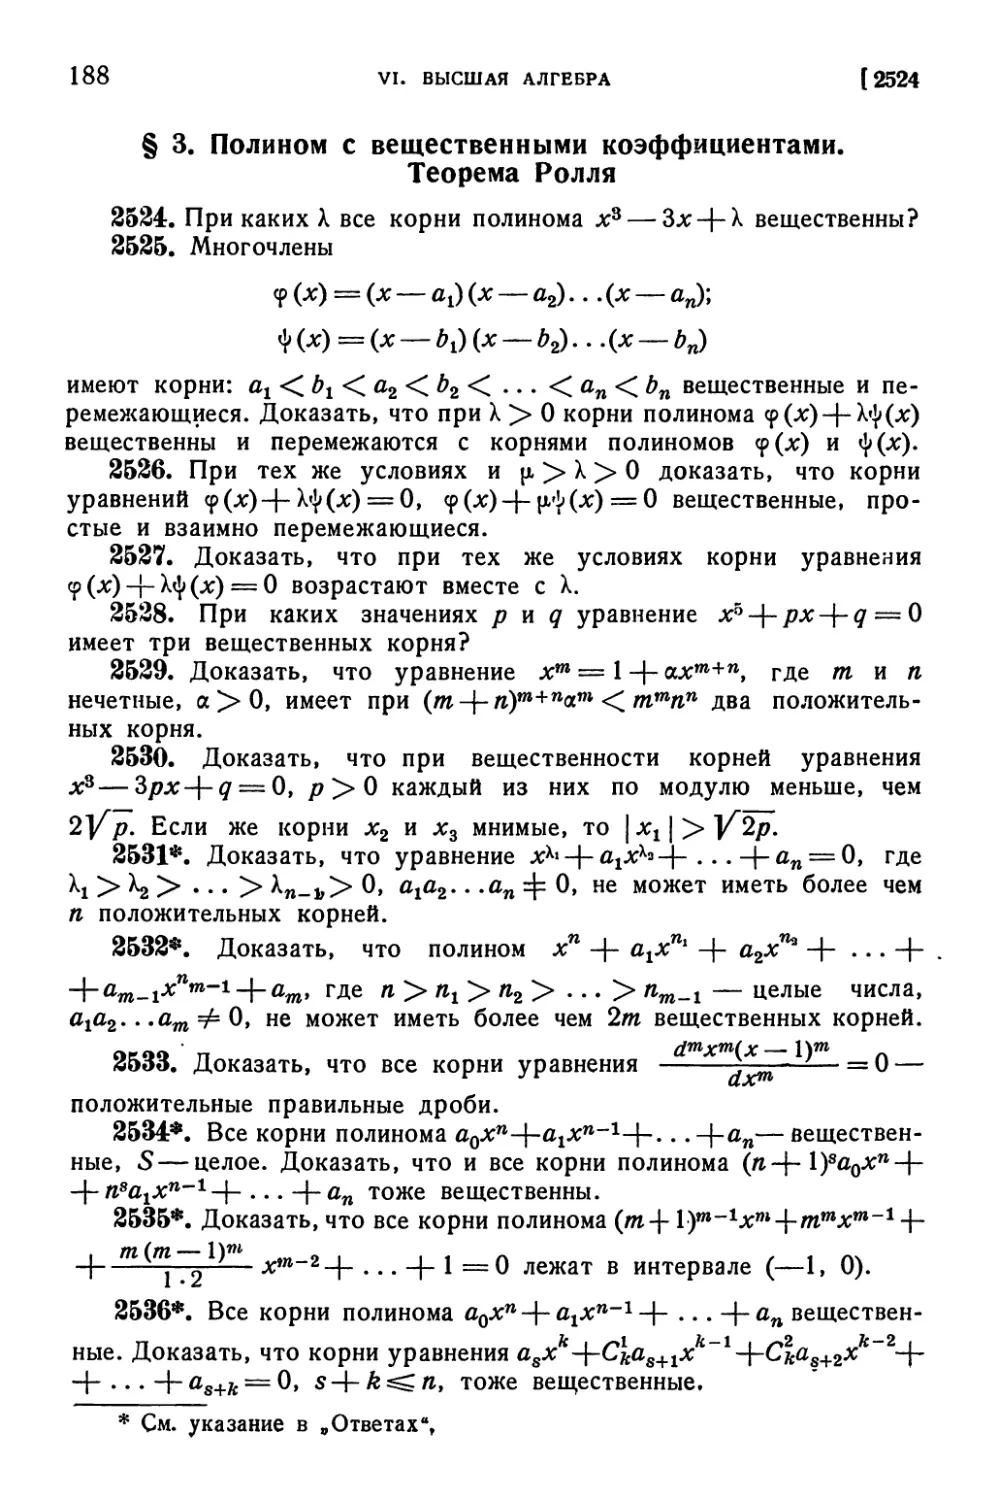 § 3. Полином с вещественными коэффициентами. Теорема Ролля